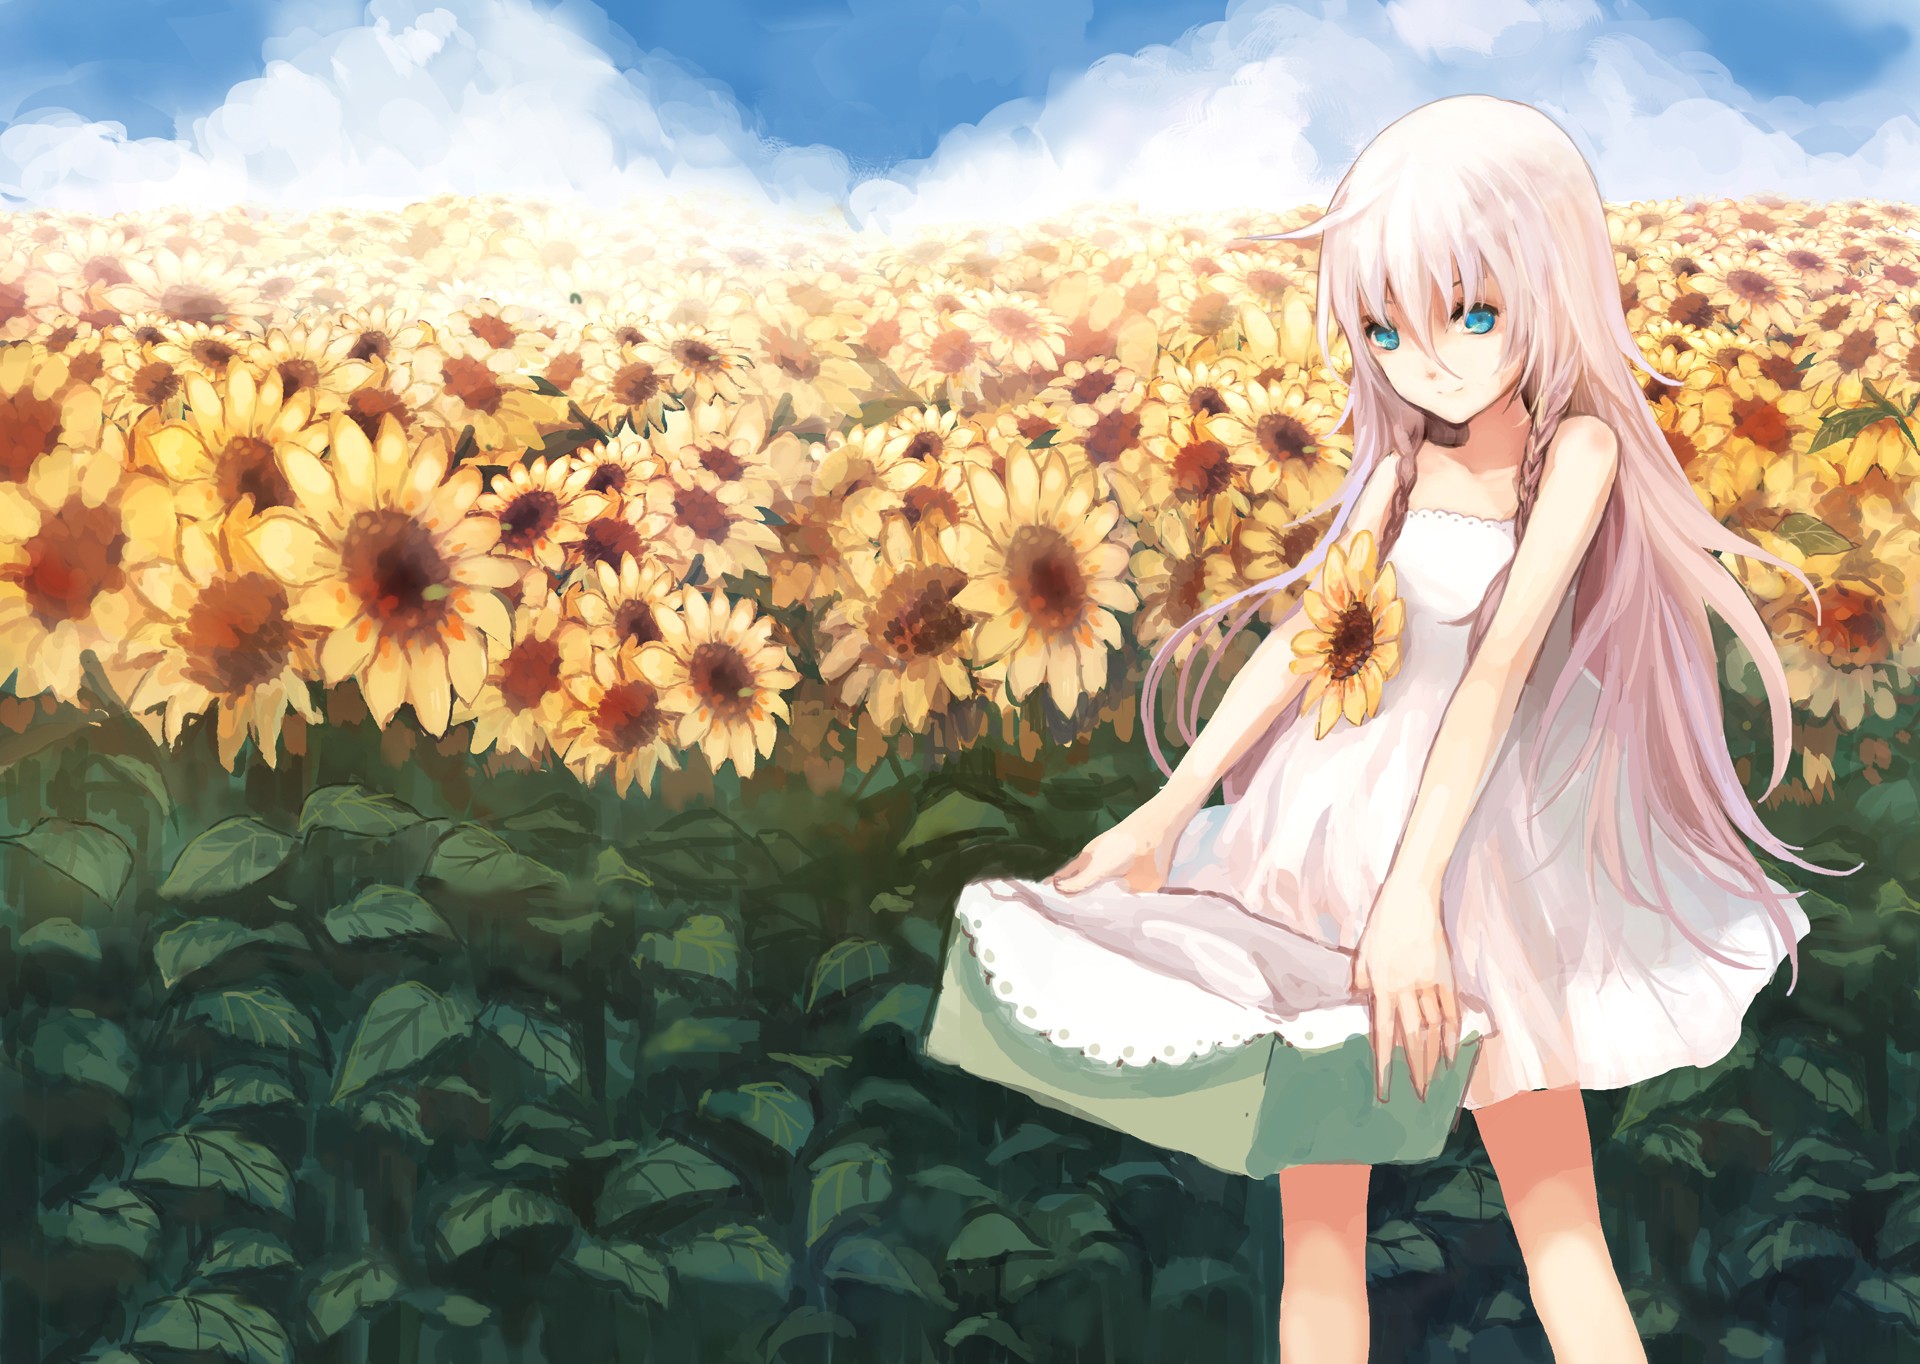 Anime 1920x1364 anime girls Vocaloid sun dress sunflowers flowers plants dress summer dress anime aqua eyes pink hair long hair standing women outdoors